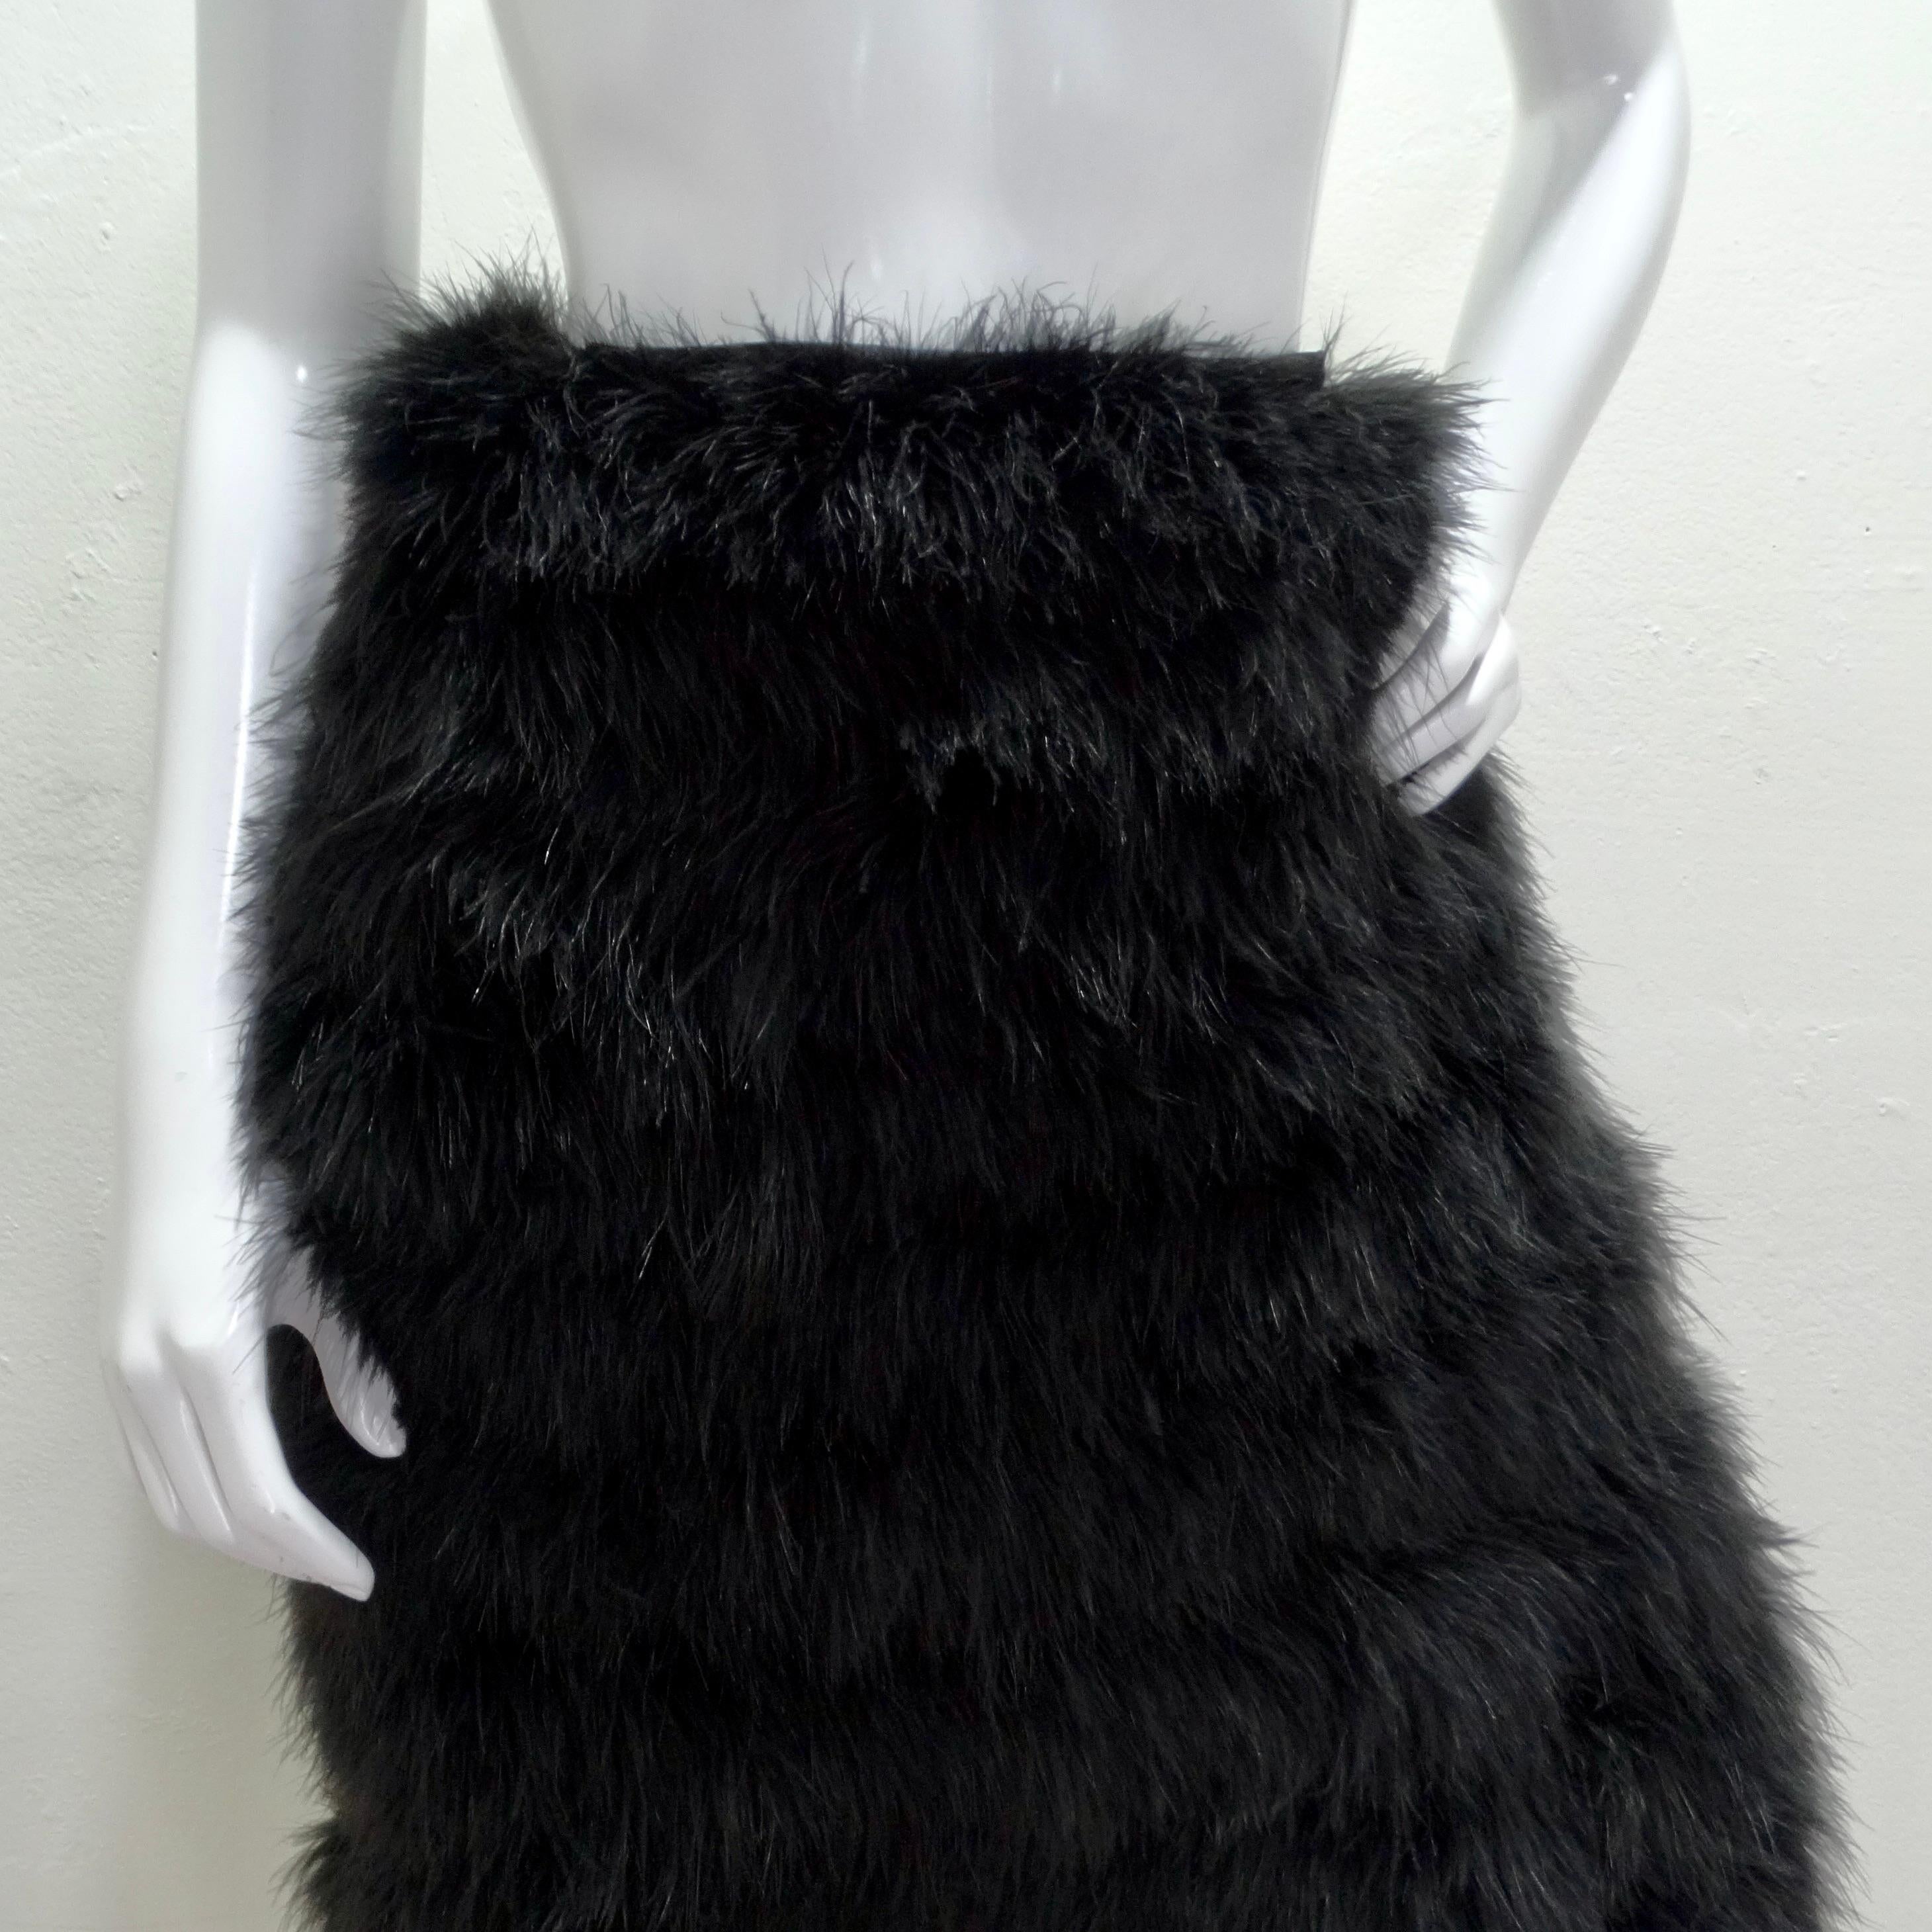 Voici l'exquise jupe midi en plumes de marabout noir de Saks Fifth Avenue des années 1960, une pièce d'exception qui respire le luxe et la sophistication. Confectionnée avec une attention méticuleuse aux détails, cette jupe mi-longue est une